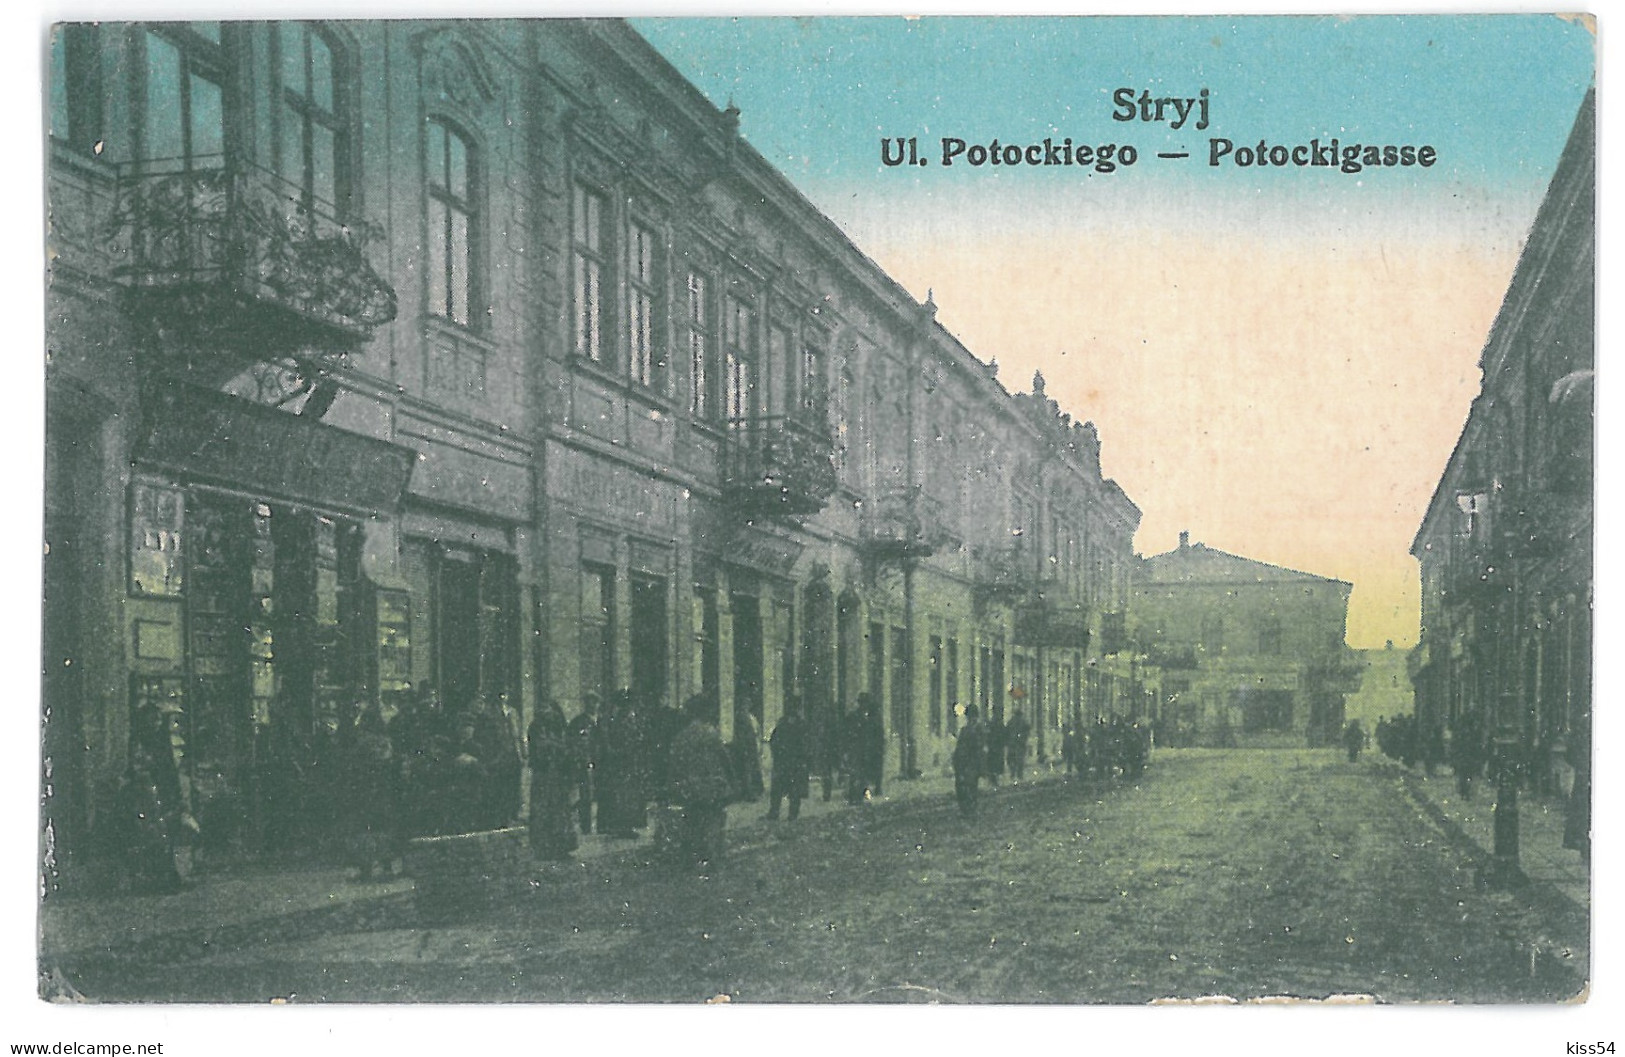 UK 11 - 14034 STRYJ, Ukraine, Potockiego Street - Old Postcard, CENSOR - Used - 1915 - Ukraine